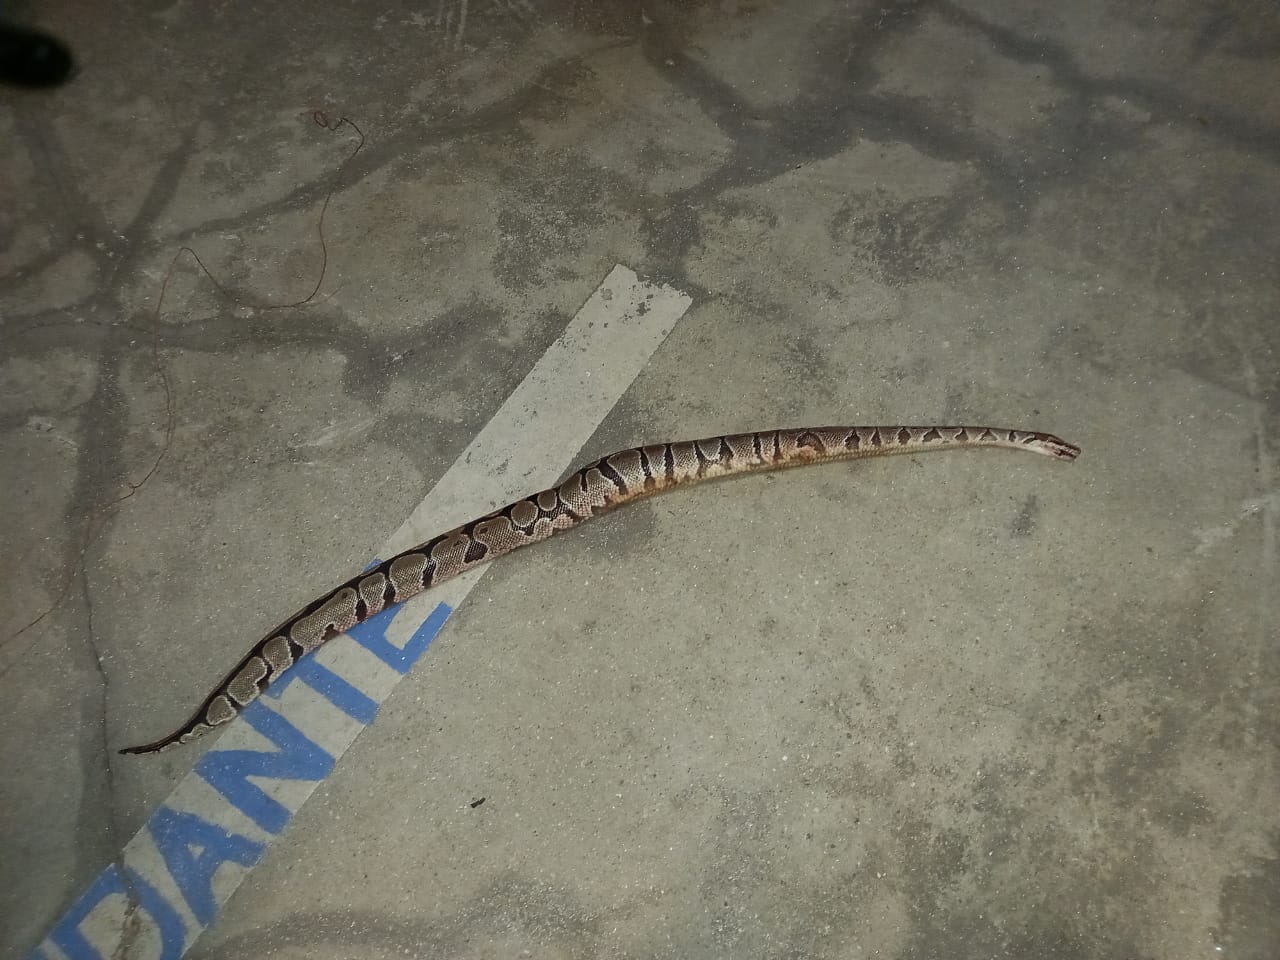     Un python royal découvert à Deshaies 

